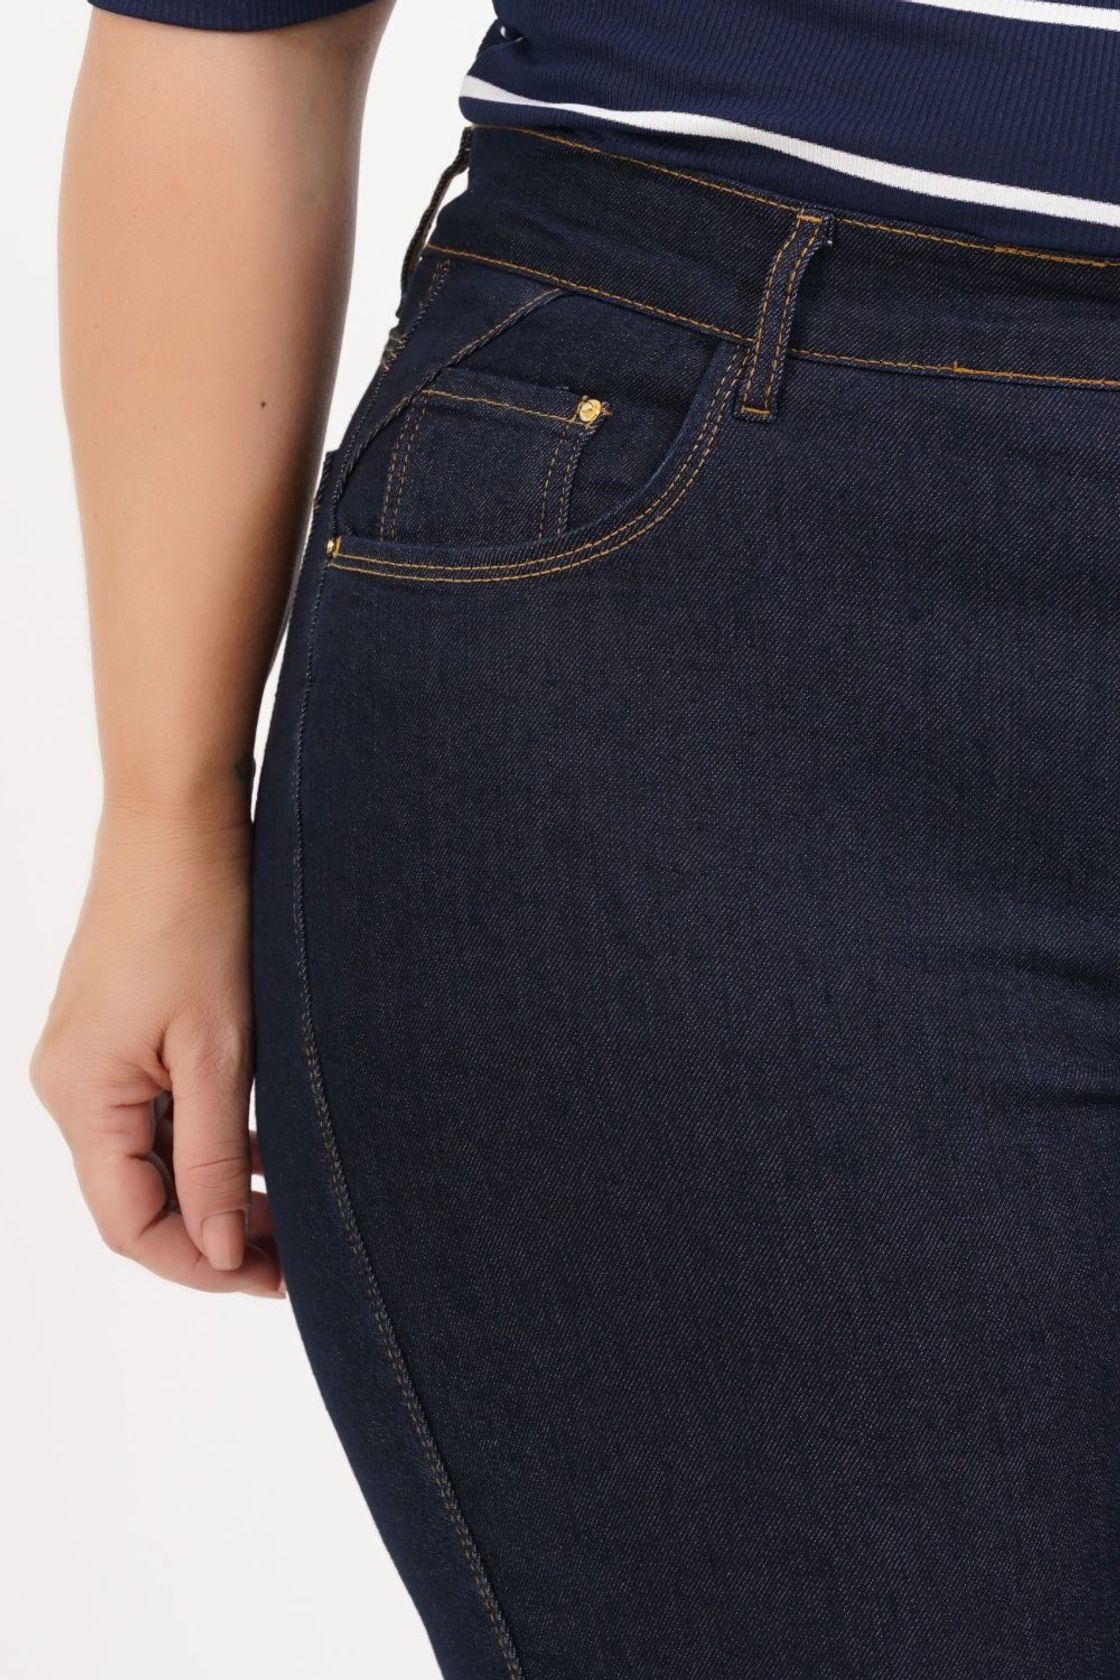 As calças tendência que vão nos fazer dar um descanso para o jeans